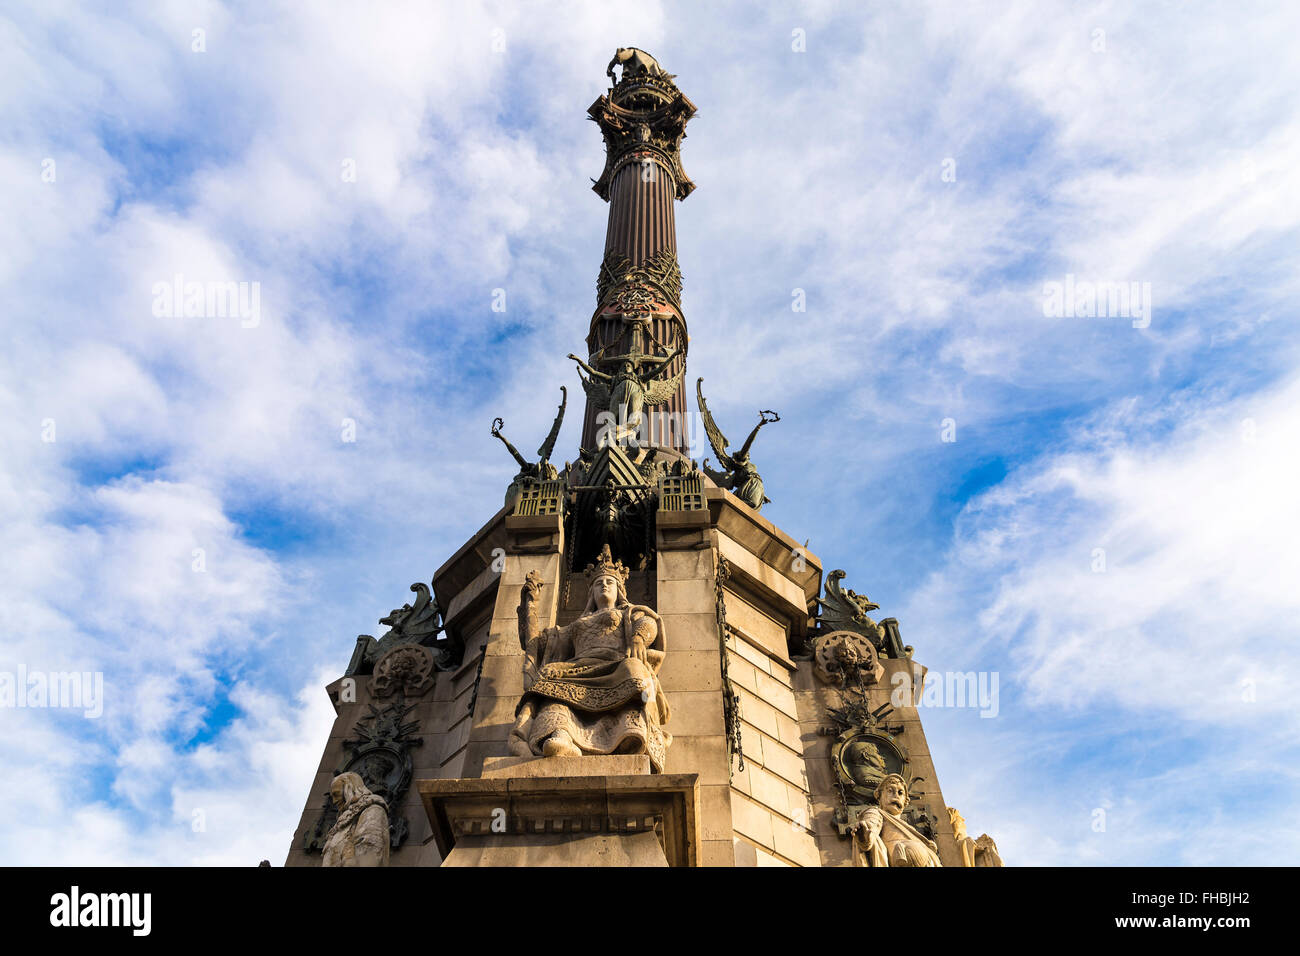 Le monument de Christophe Colomb est un 60 mètres de haut monument de Christophe Colomb à l'extrémité inférieure de La Rambla, Barcelone, Espagne Banque D'Images